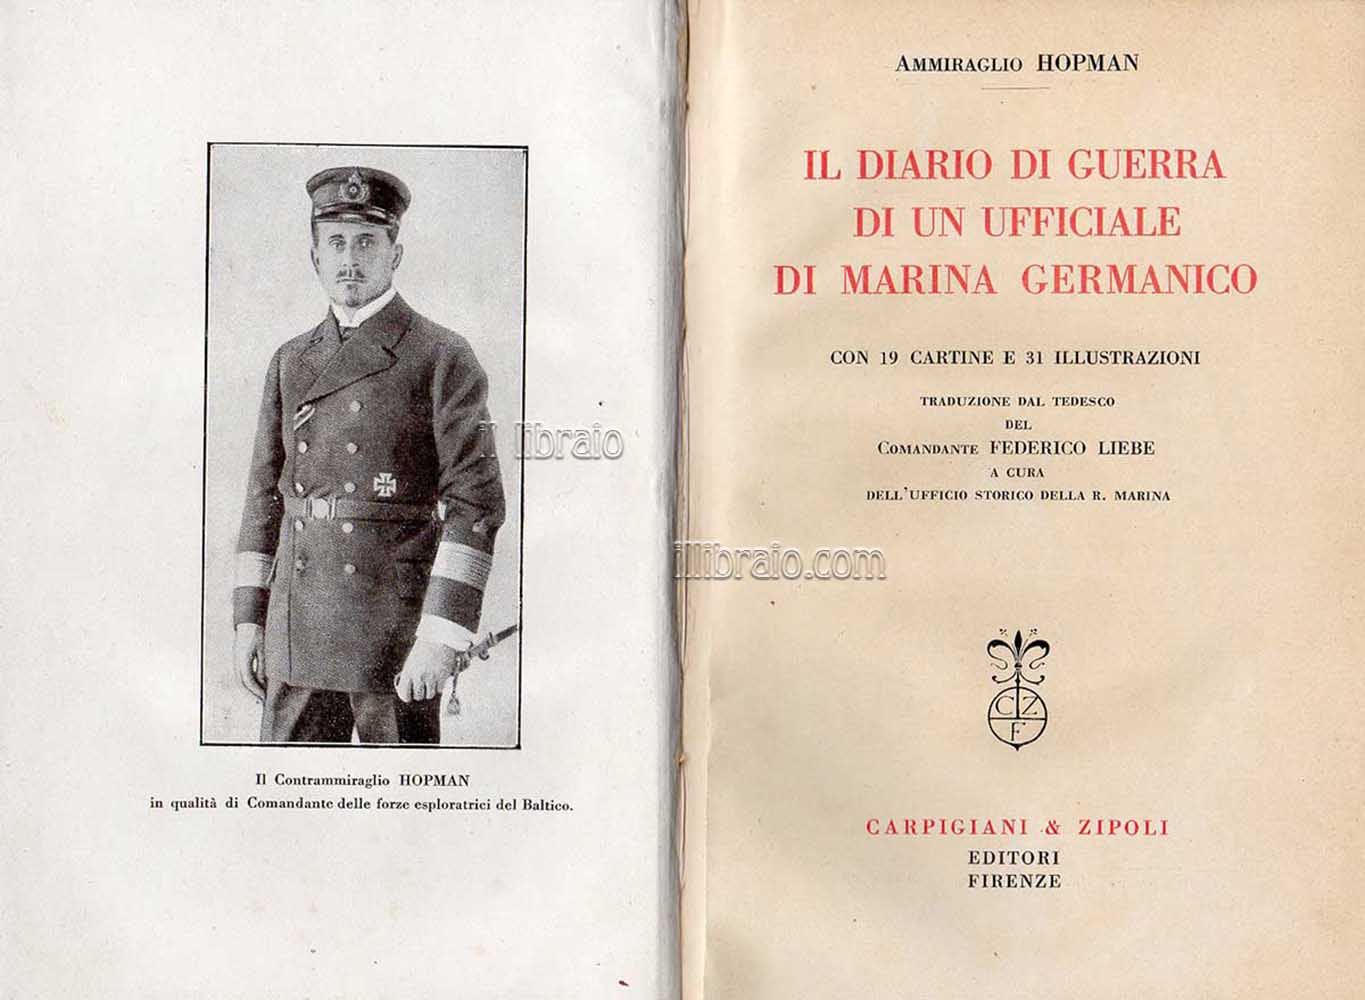 Il diario di guerra di un ufficiale di marina germanico